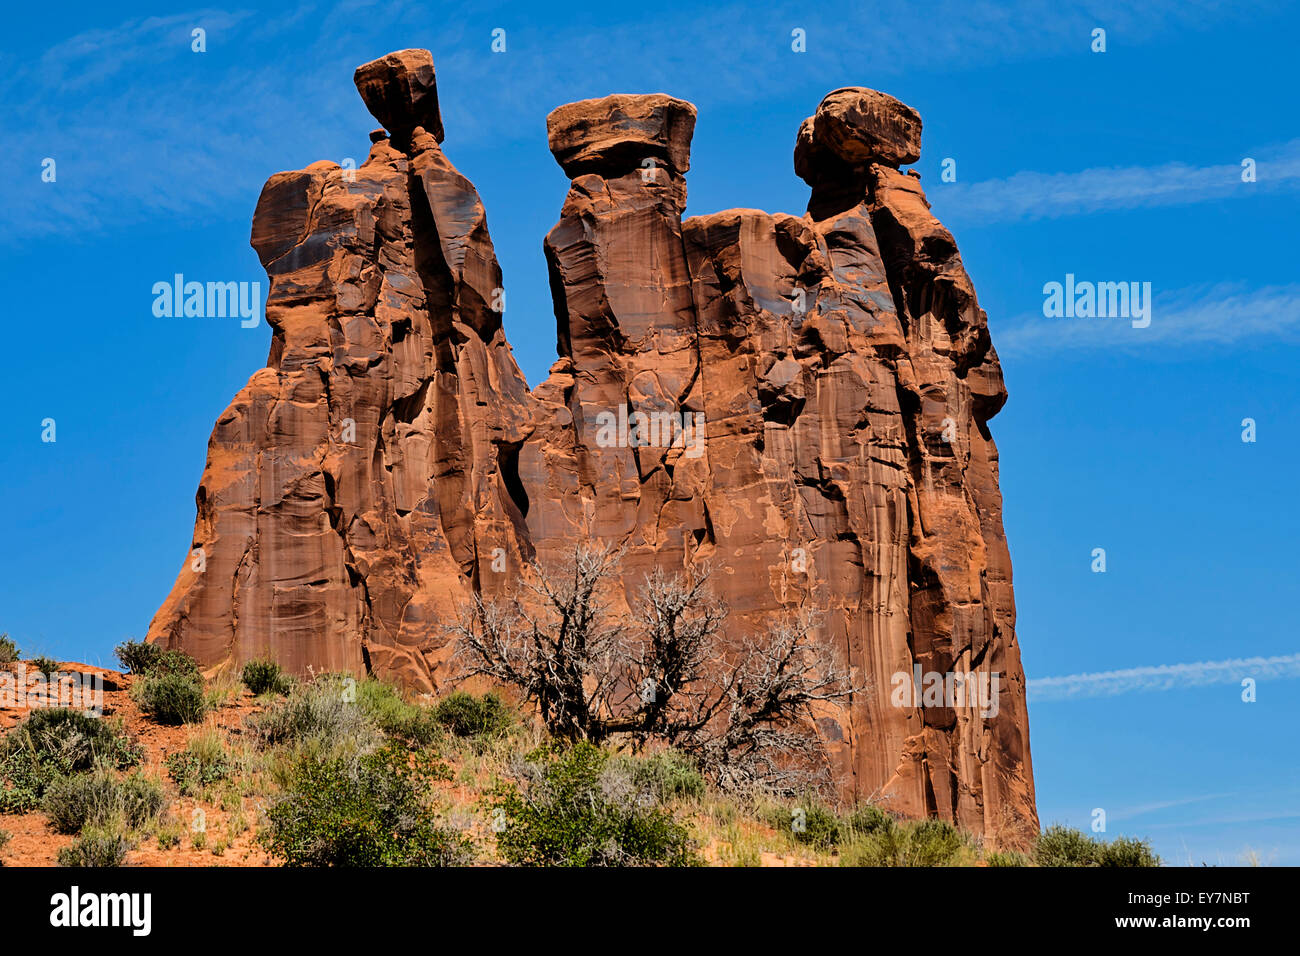 Les trois commères, Arches National Park, Utah, USA, Amérique du Nord, États-Unis Banque D'Images